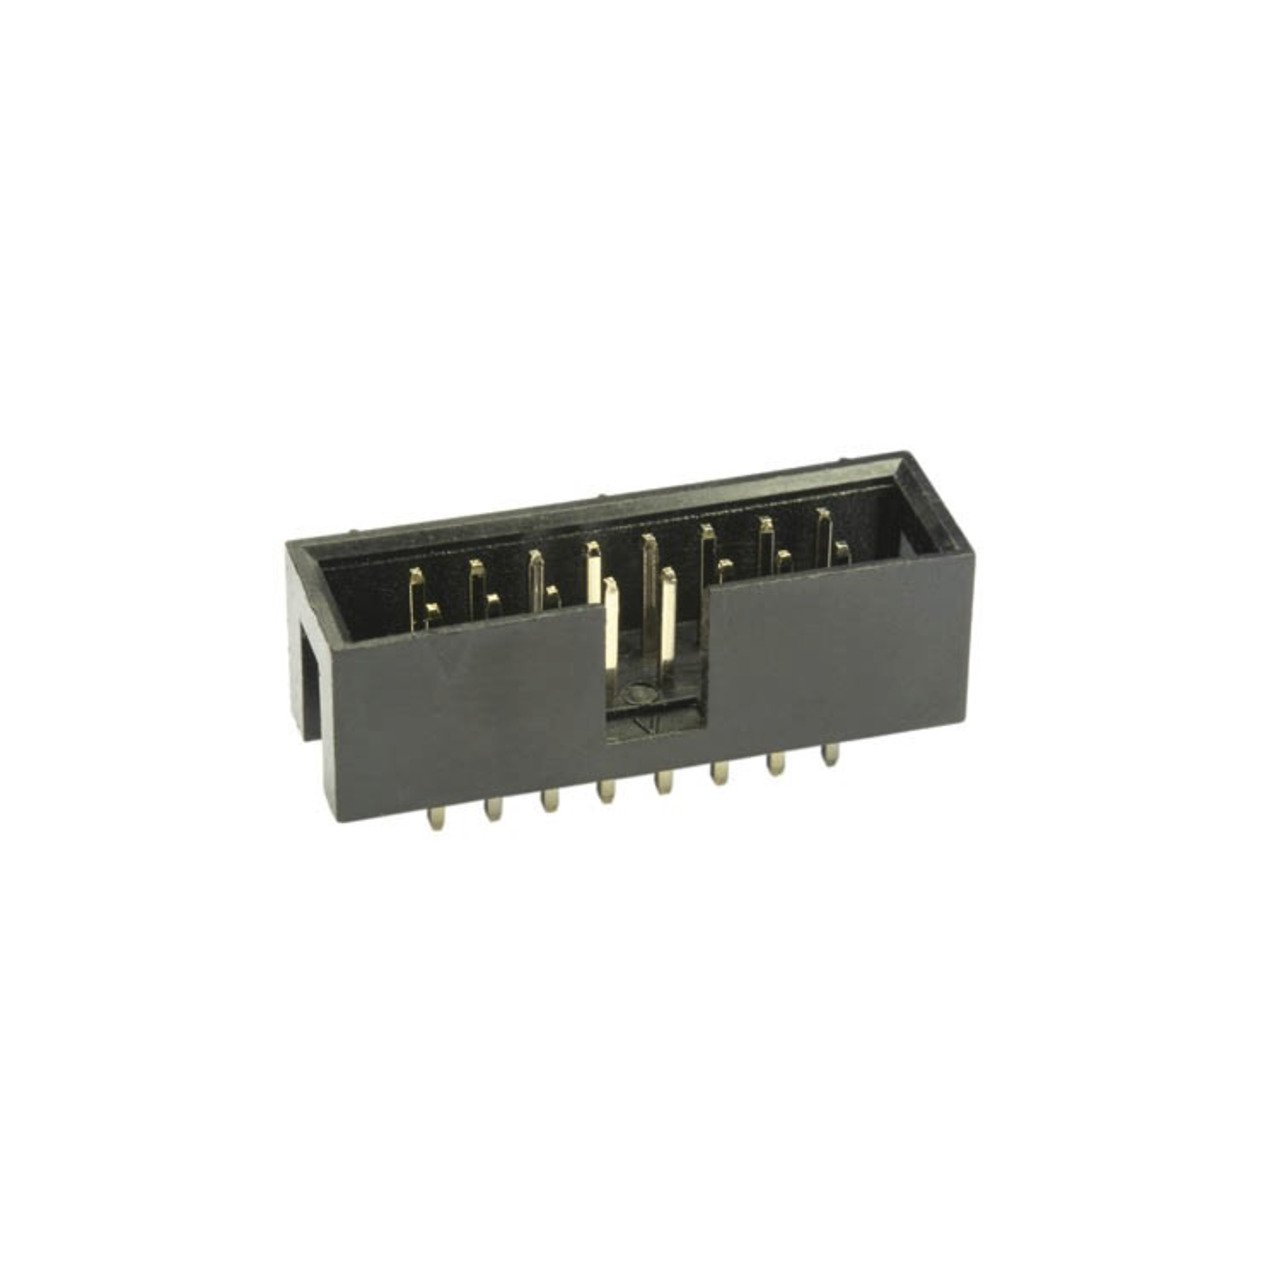 econ connect Wannensteckerleiste WS40G- 40-polig- gerade- RM 2-54 mm- ohne Verriegelung unter Komponenten